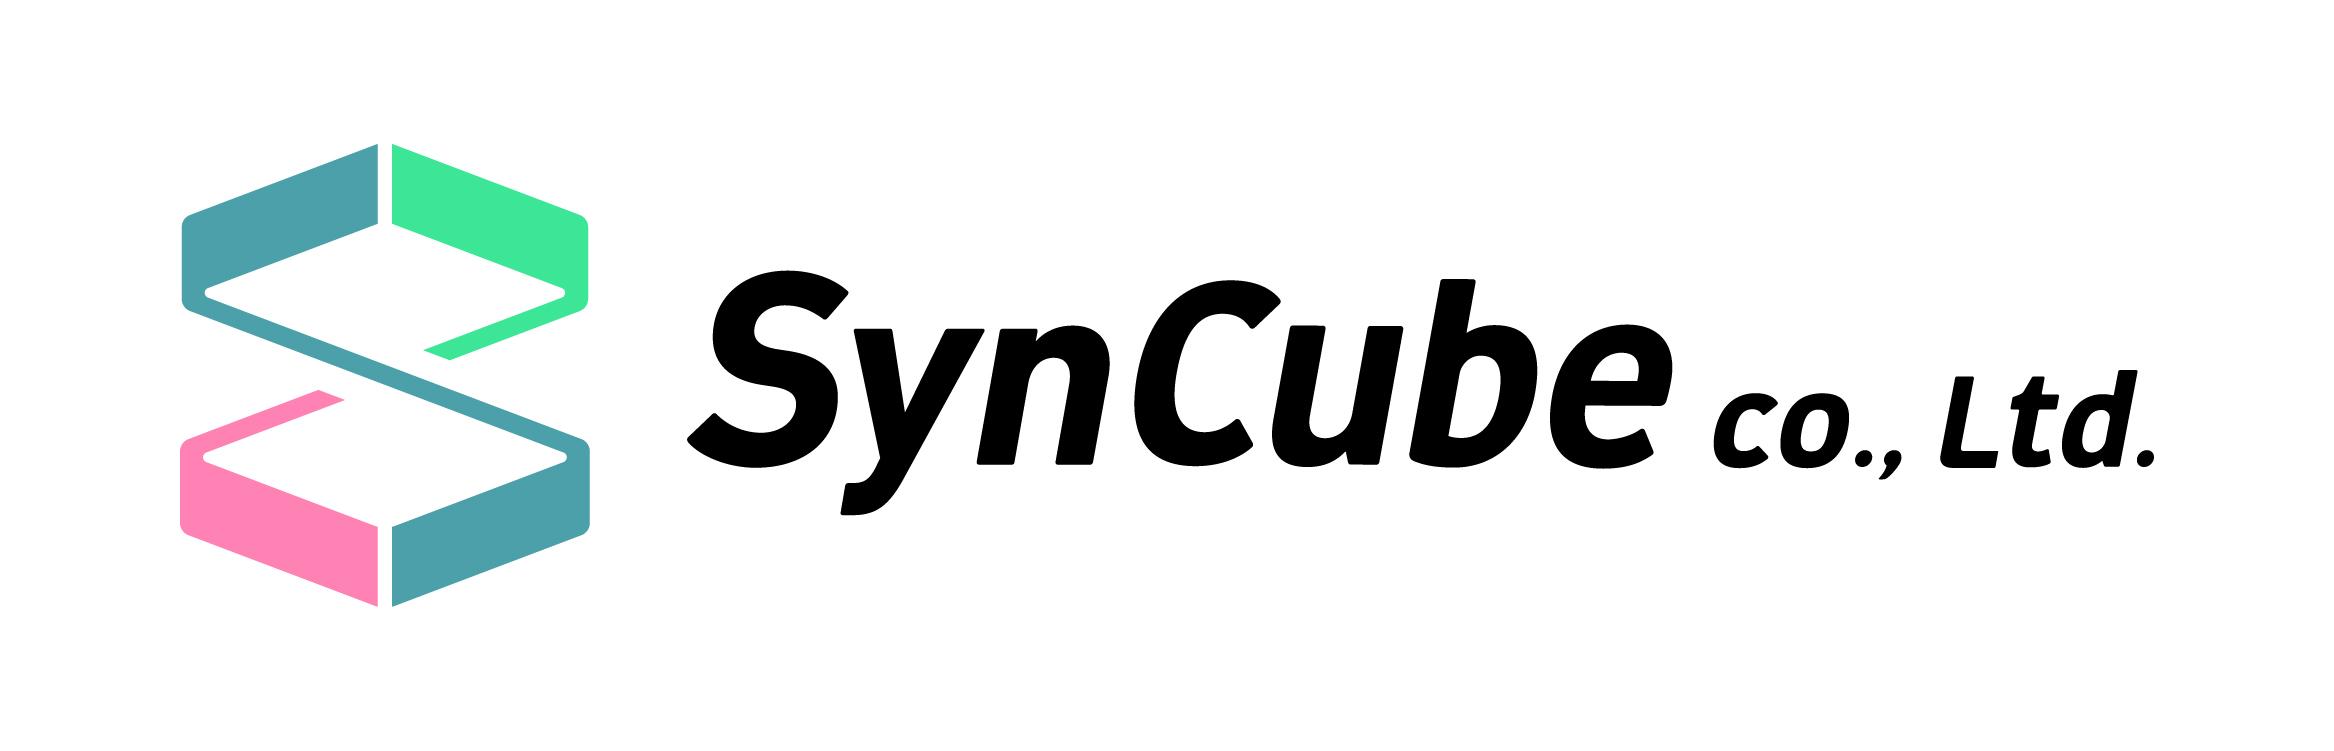 株式会社 SynCube(サインキューブ)